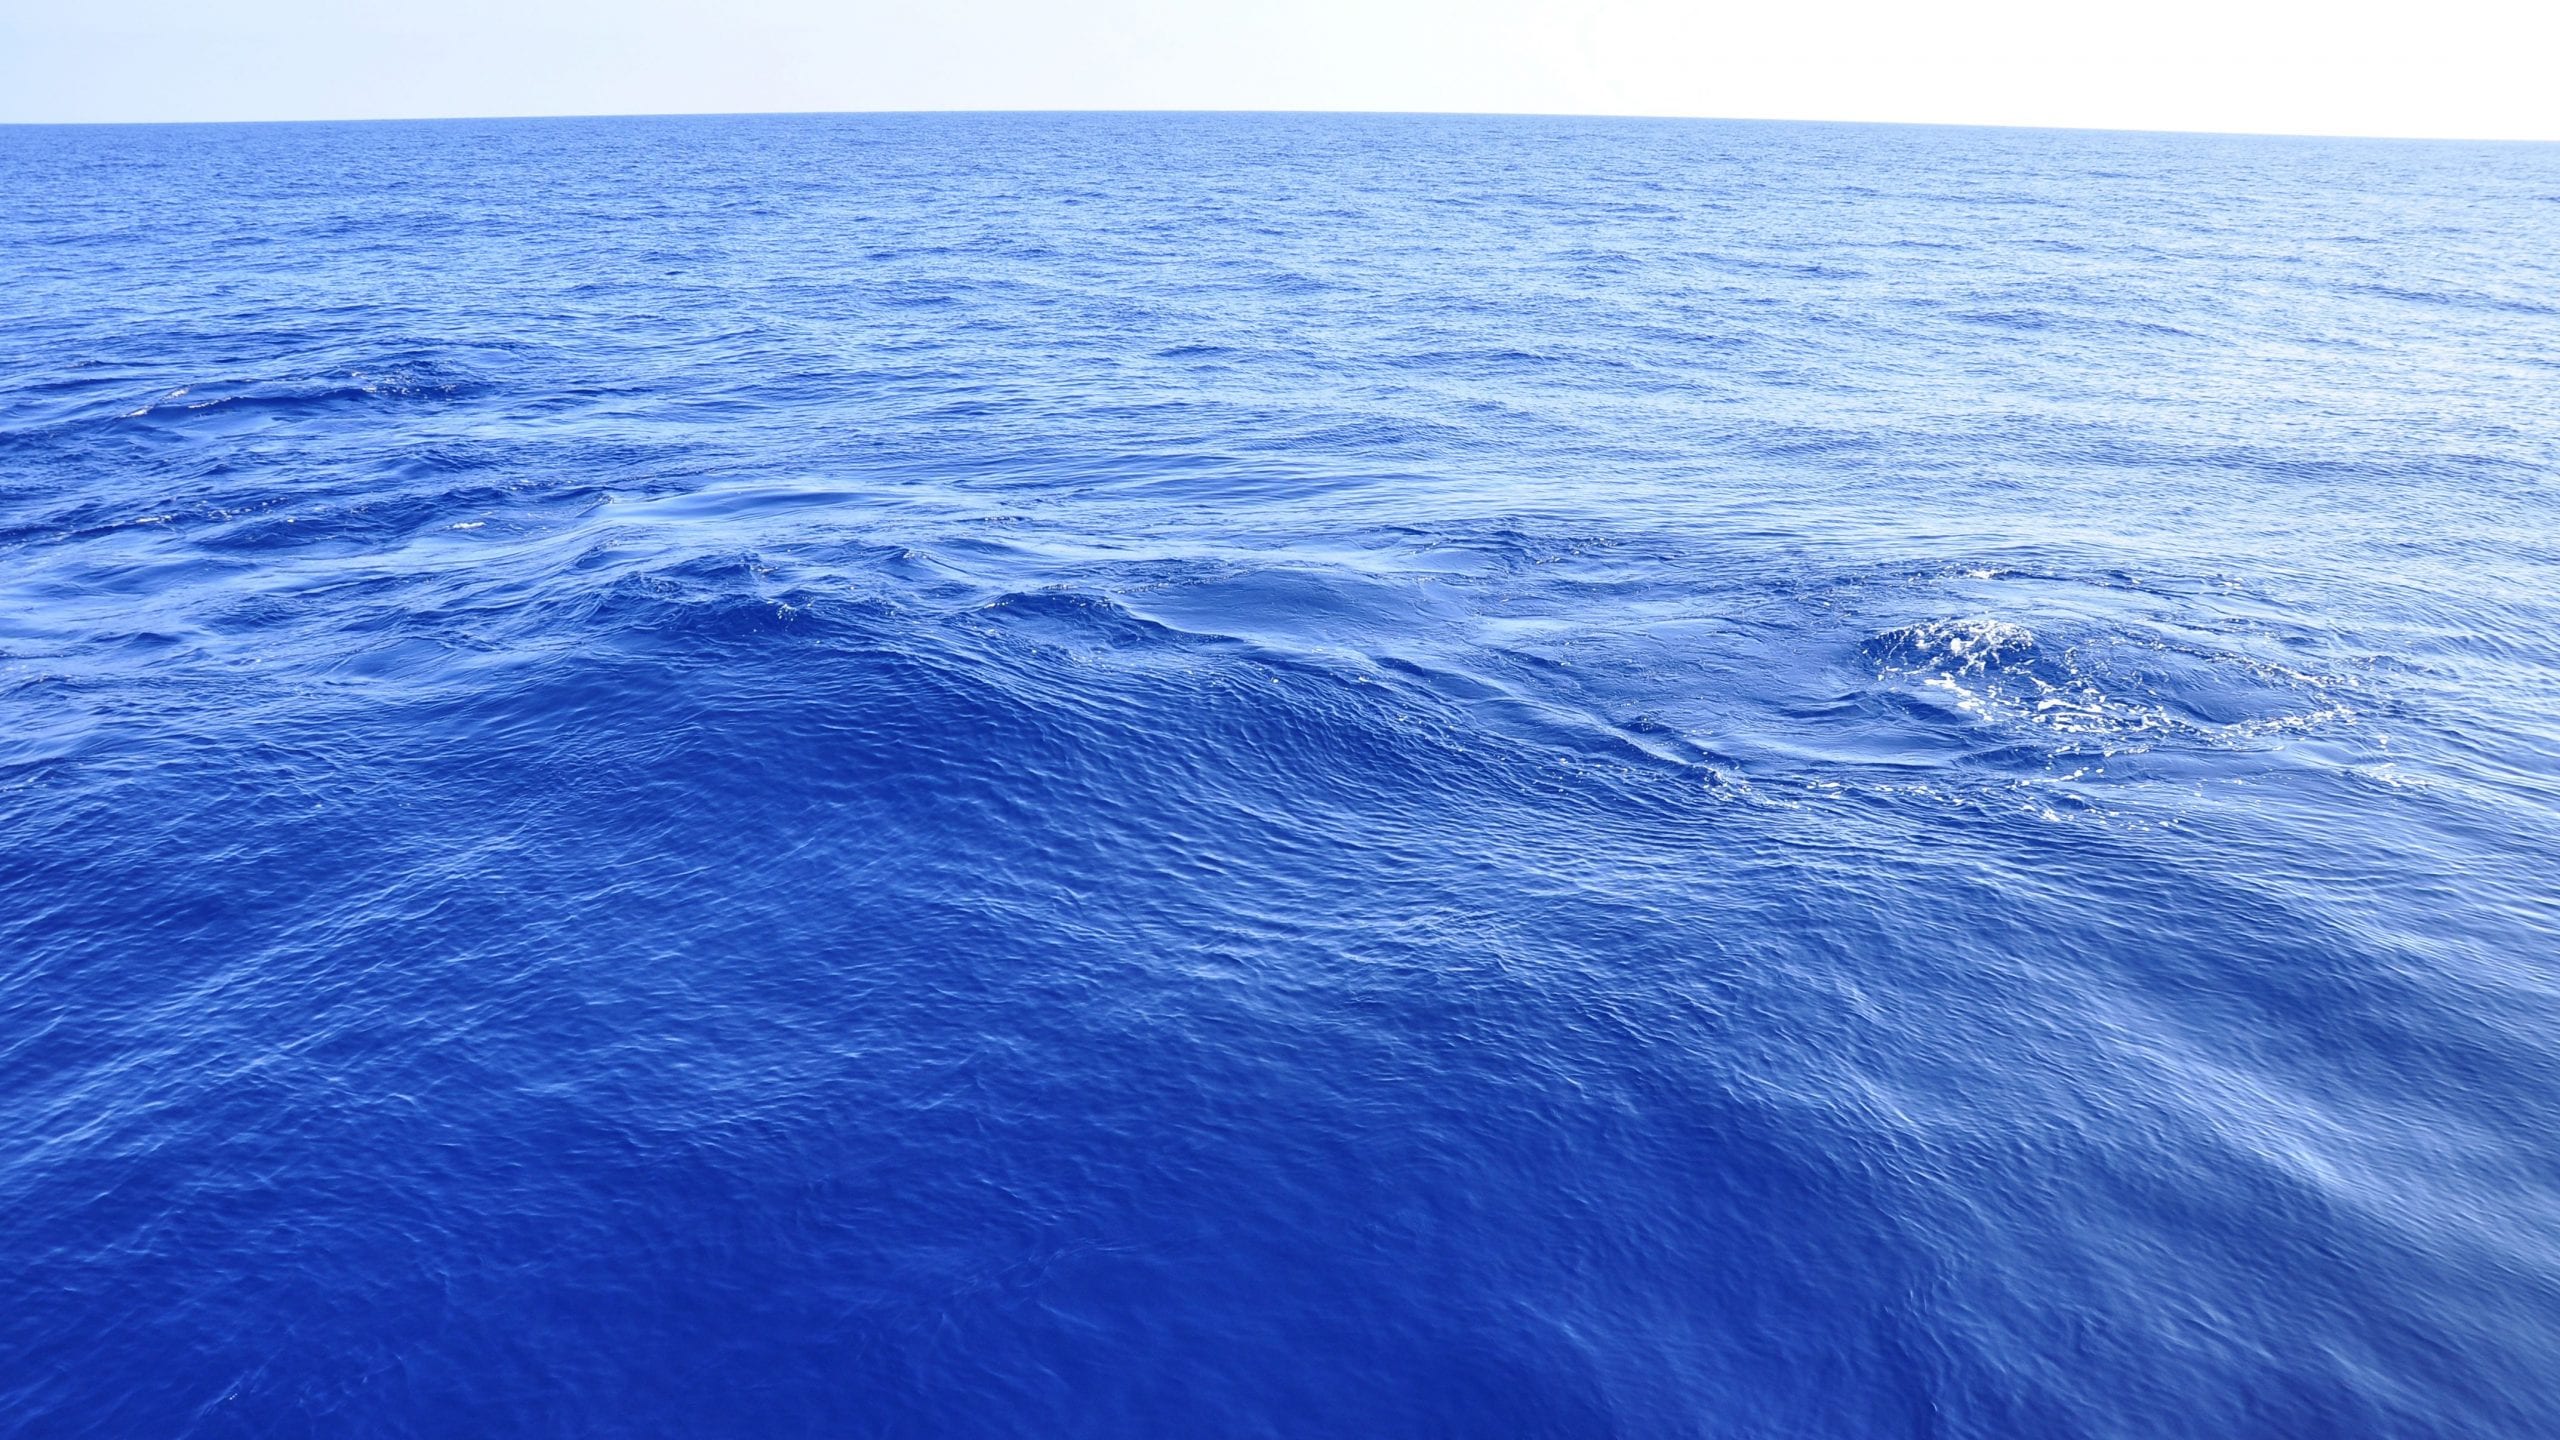 De ce este oceanul albastru?